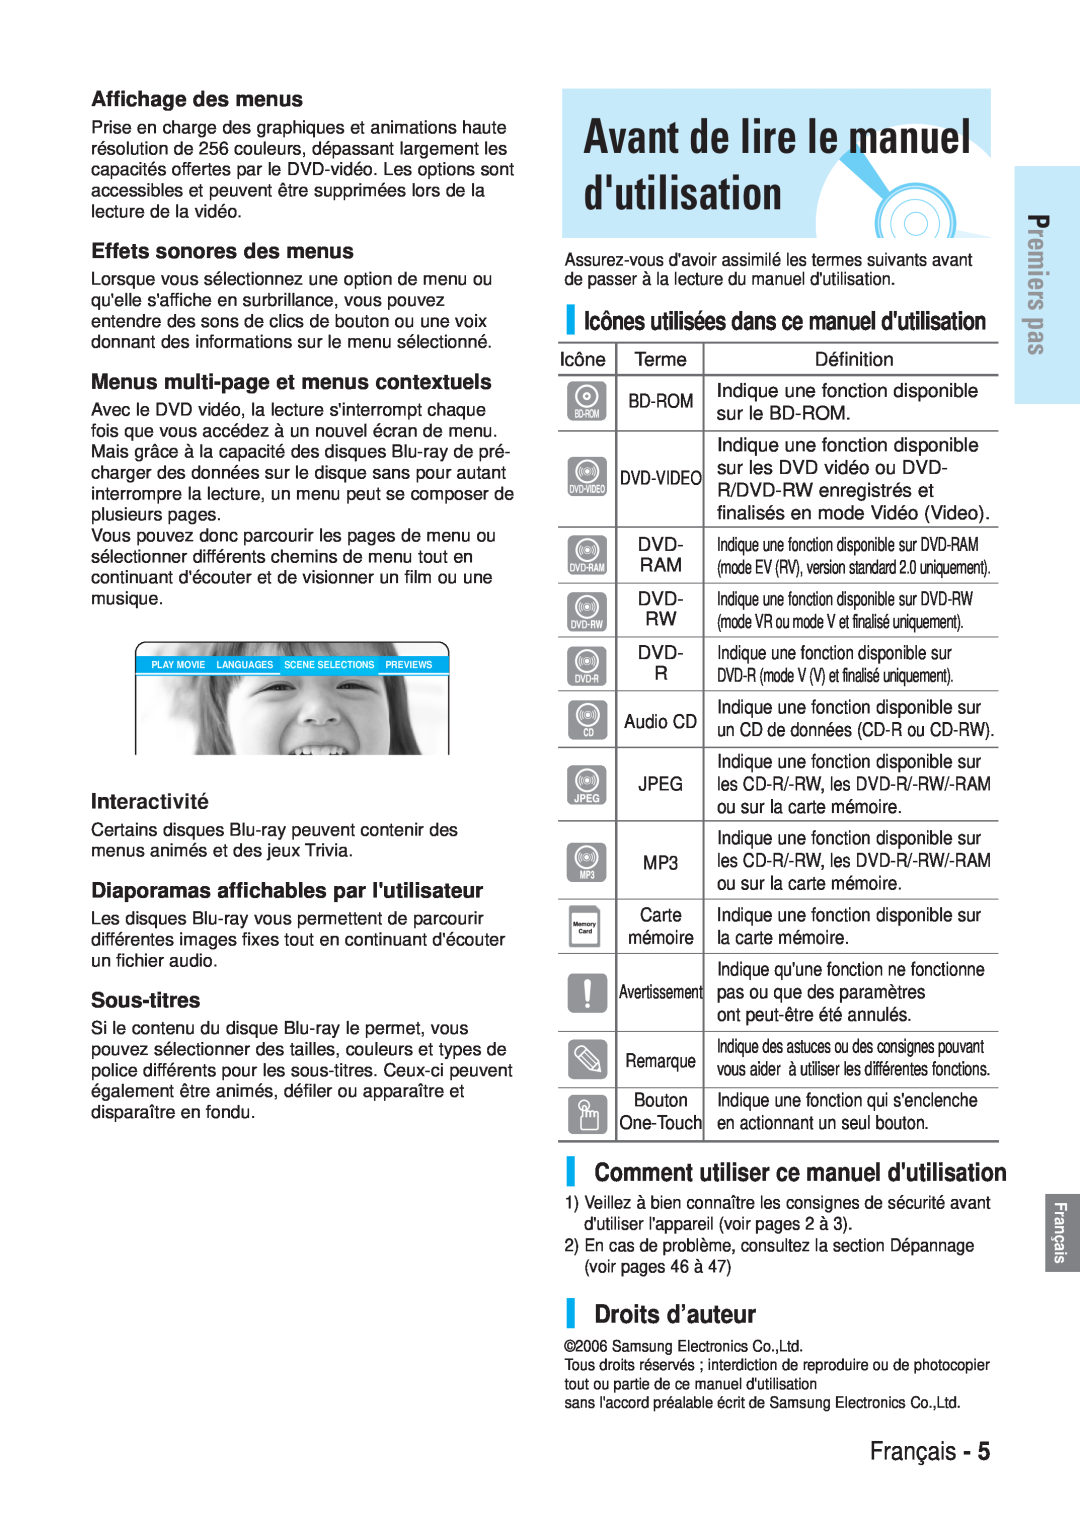 Samsung BD-P1000/XEG manual Avant de lire le manuel dutilisation, Droits d’auteur, Comment utiliser ce manuel dutilisation 